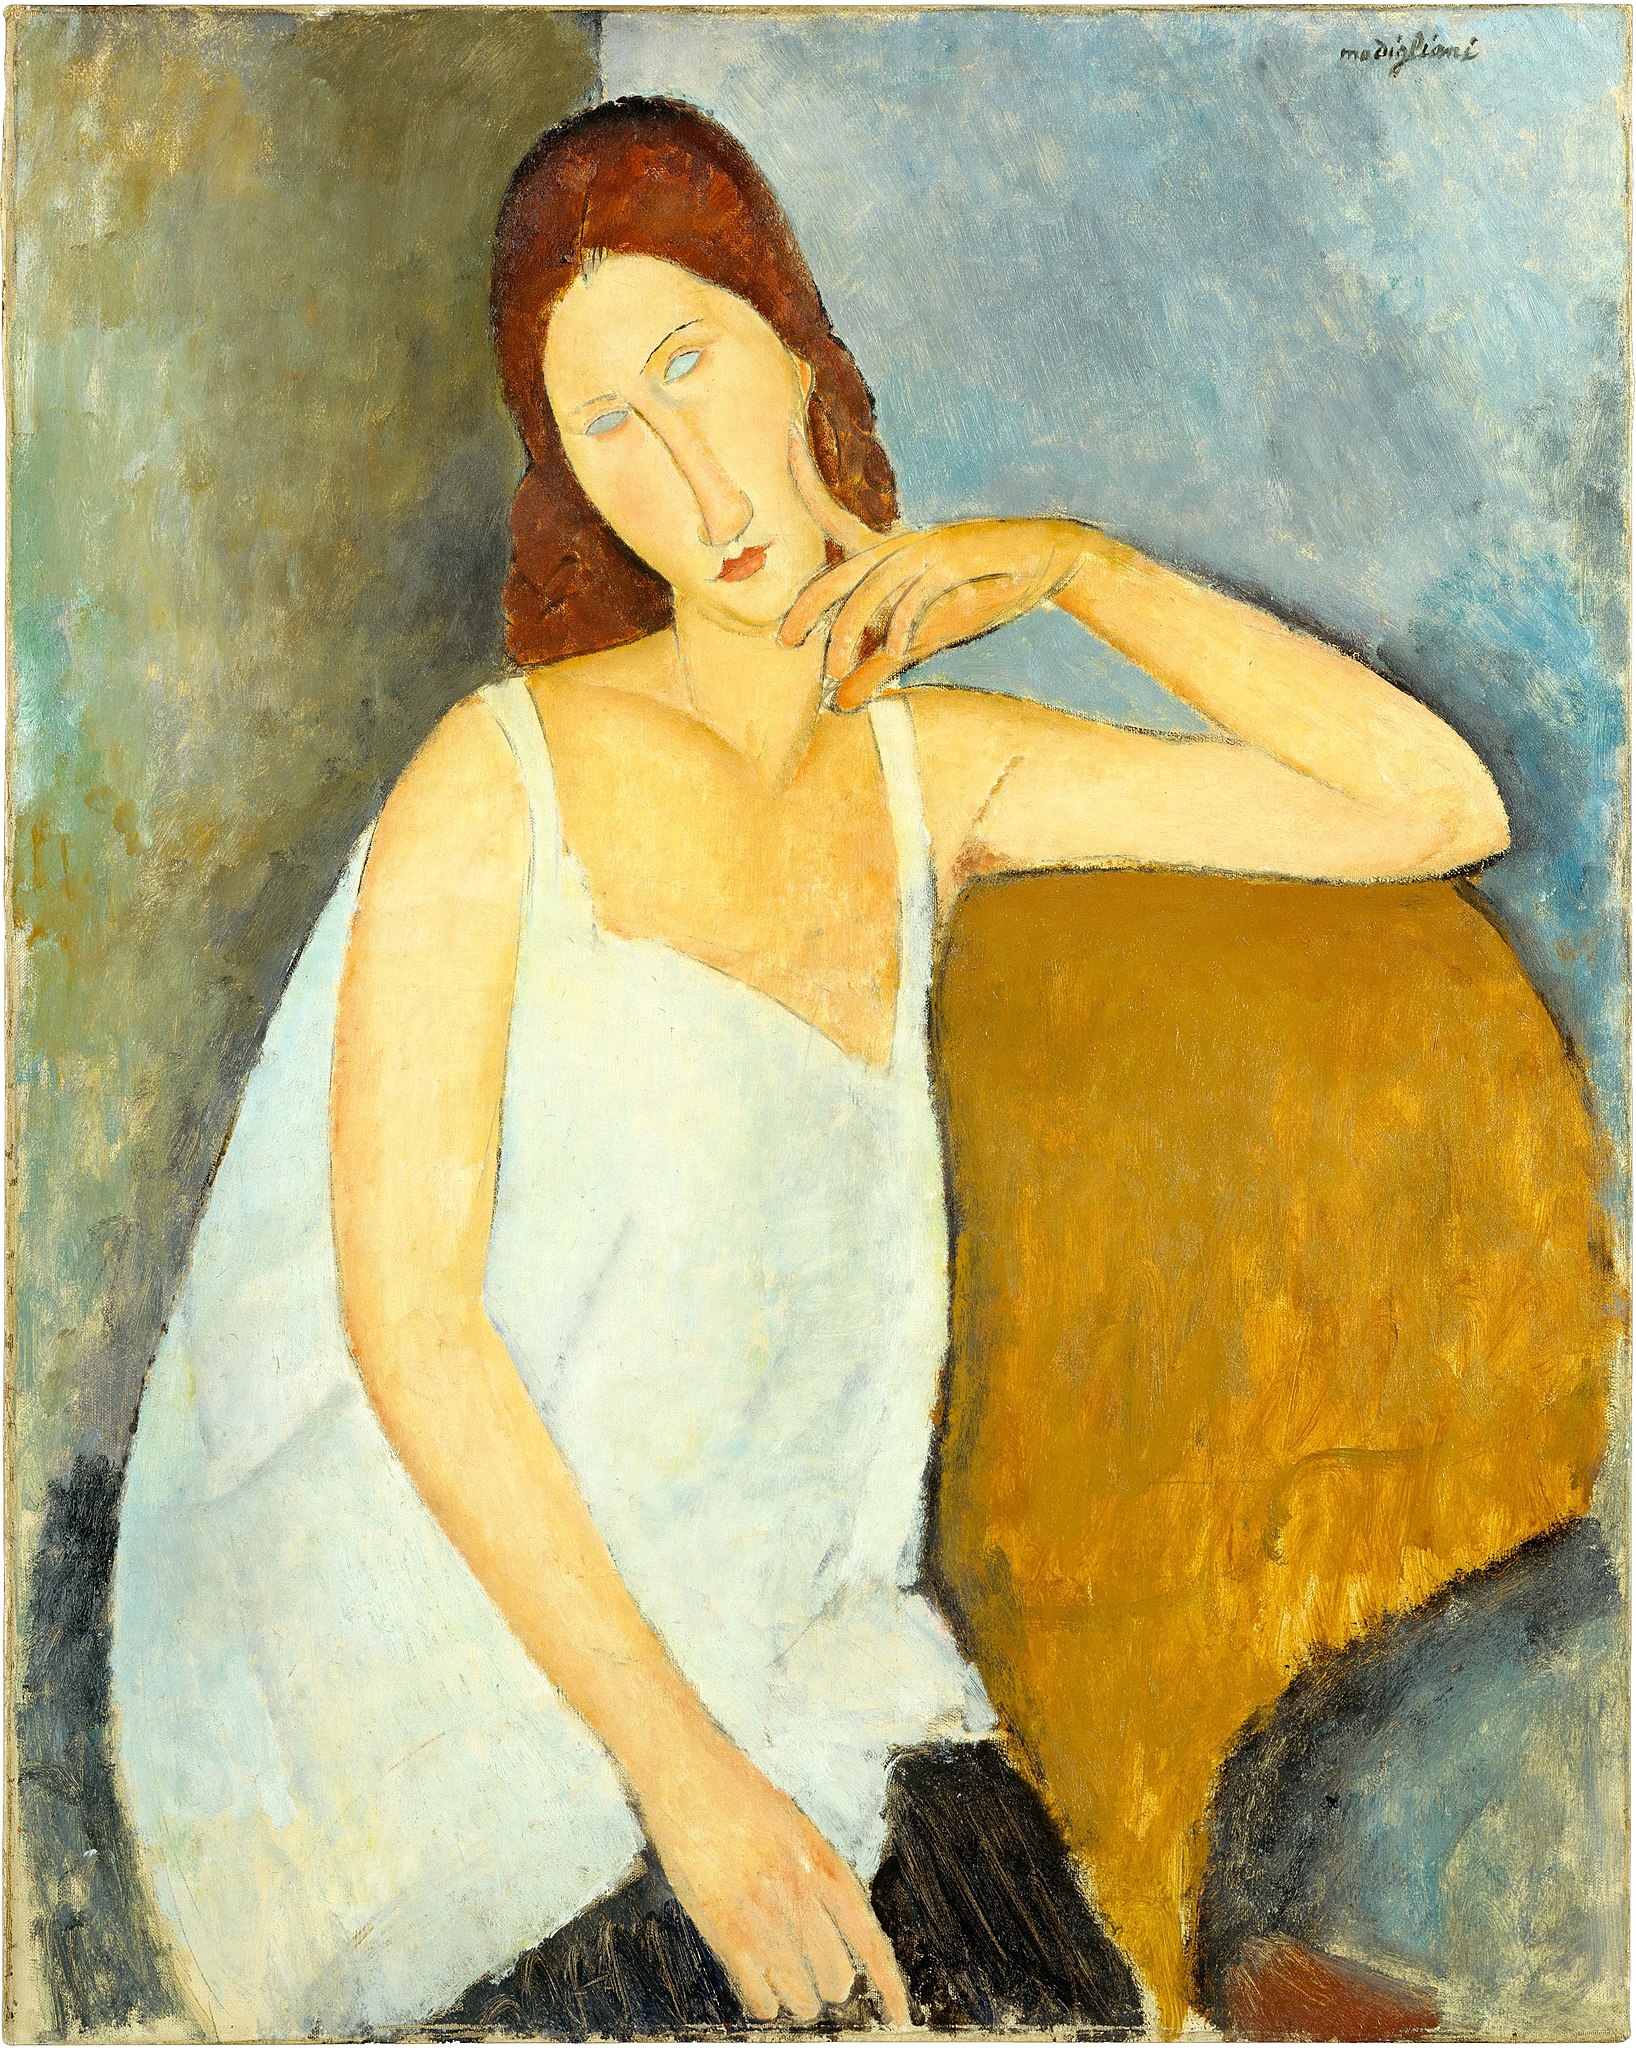 ژن ابوترن by Amedeo Modigliani - 1919 - 91.4 x 73 cm 